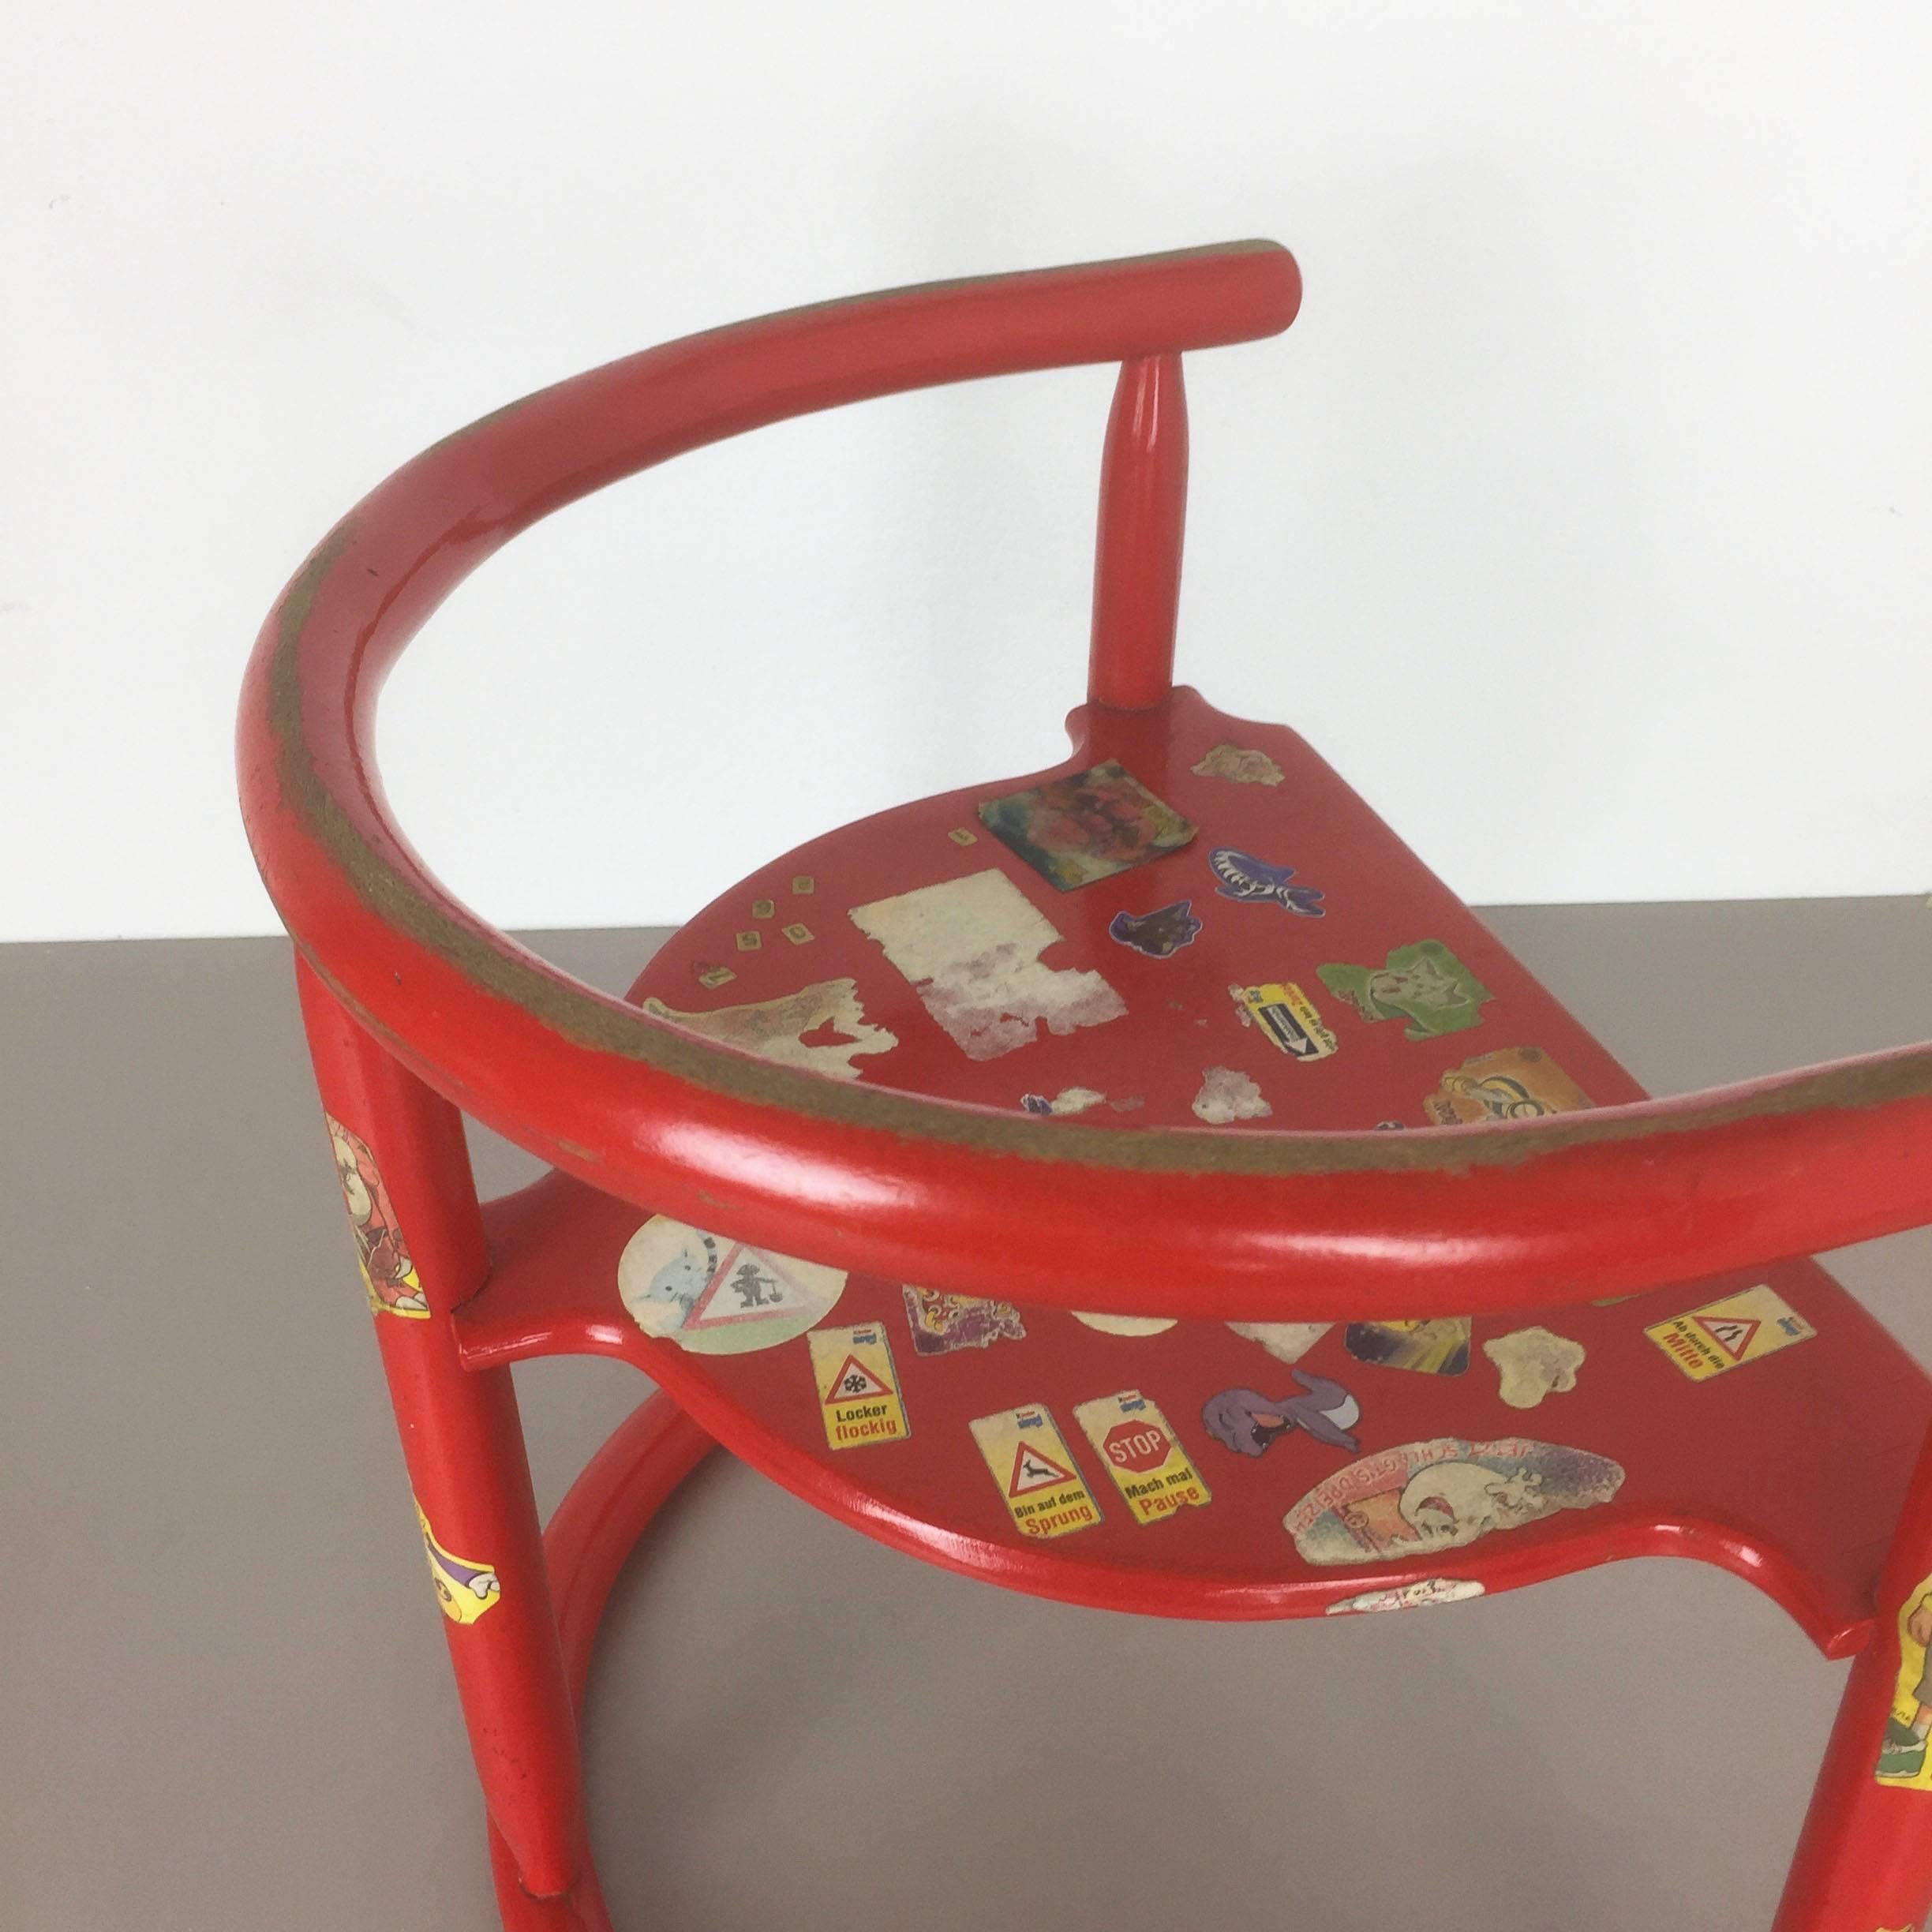 Mid-Century Modern Original Children Armchair Chair 'Anna' by Karin Mobring 1963 for Ikea, Sweden